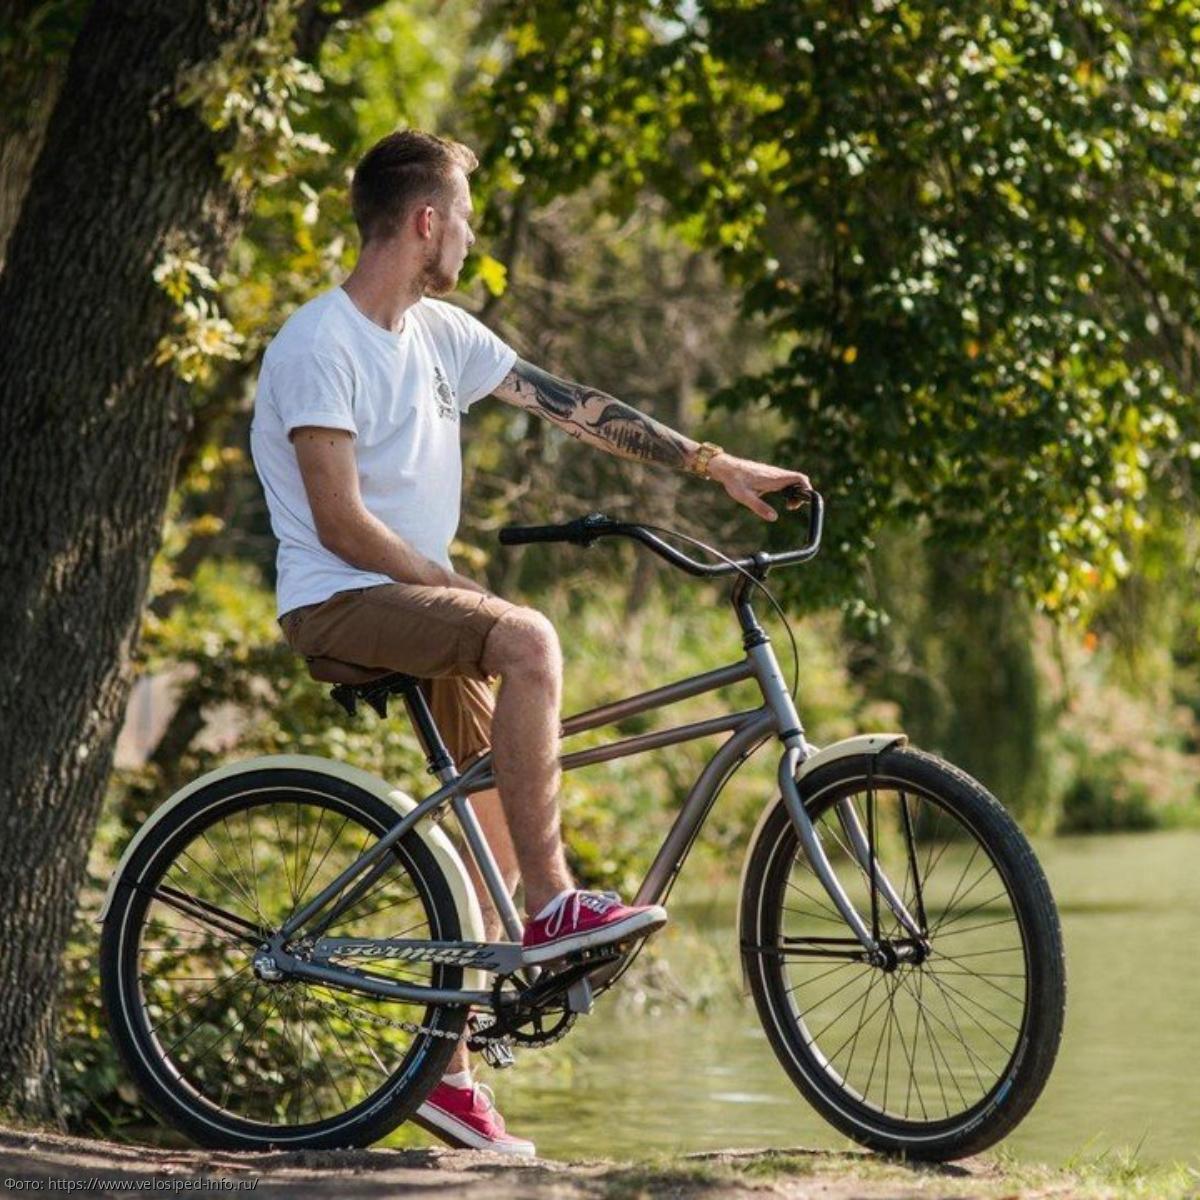 ТОП 10 лучших городских велосипедов для мужчин 2020 года